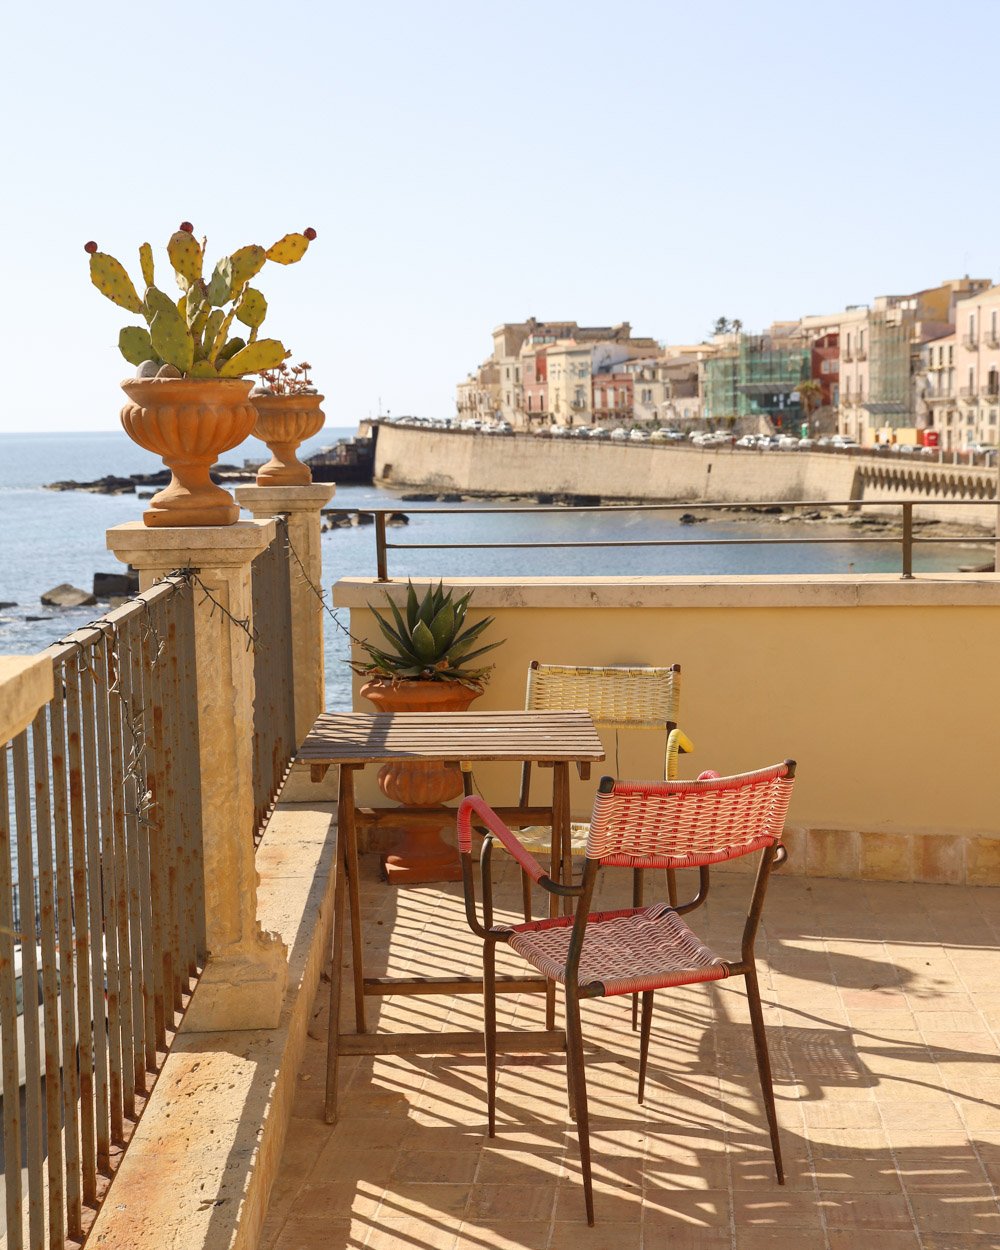 Outdoor patio overlooking ocean in Sicily